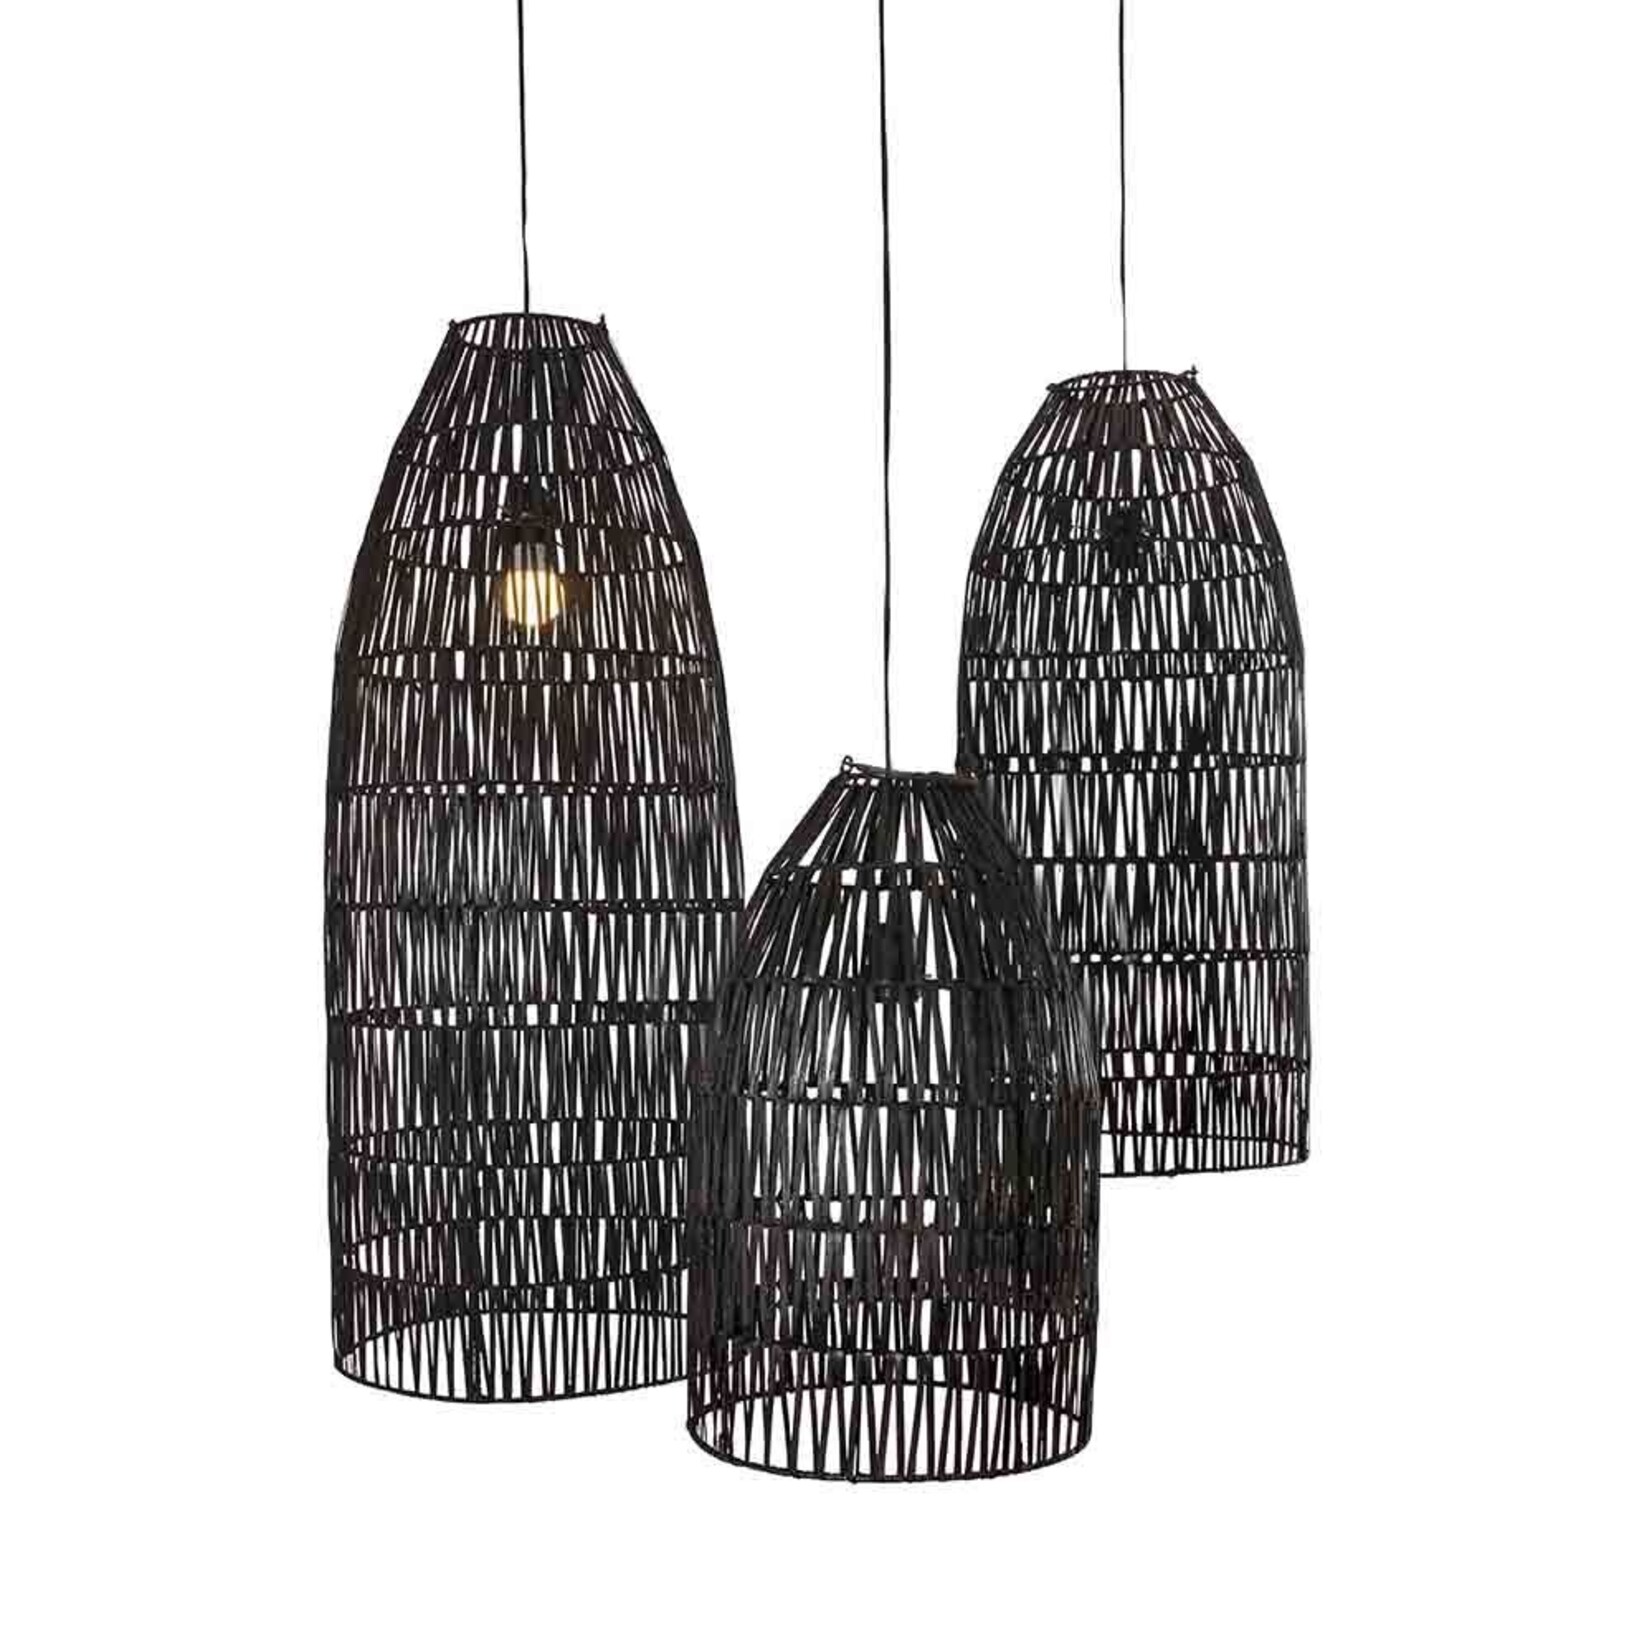 ORIGINAL HOME Original Home Lampshades Conical Black - Set Of 3